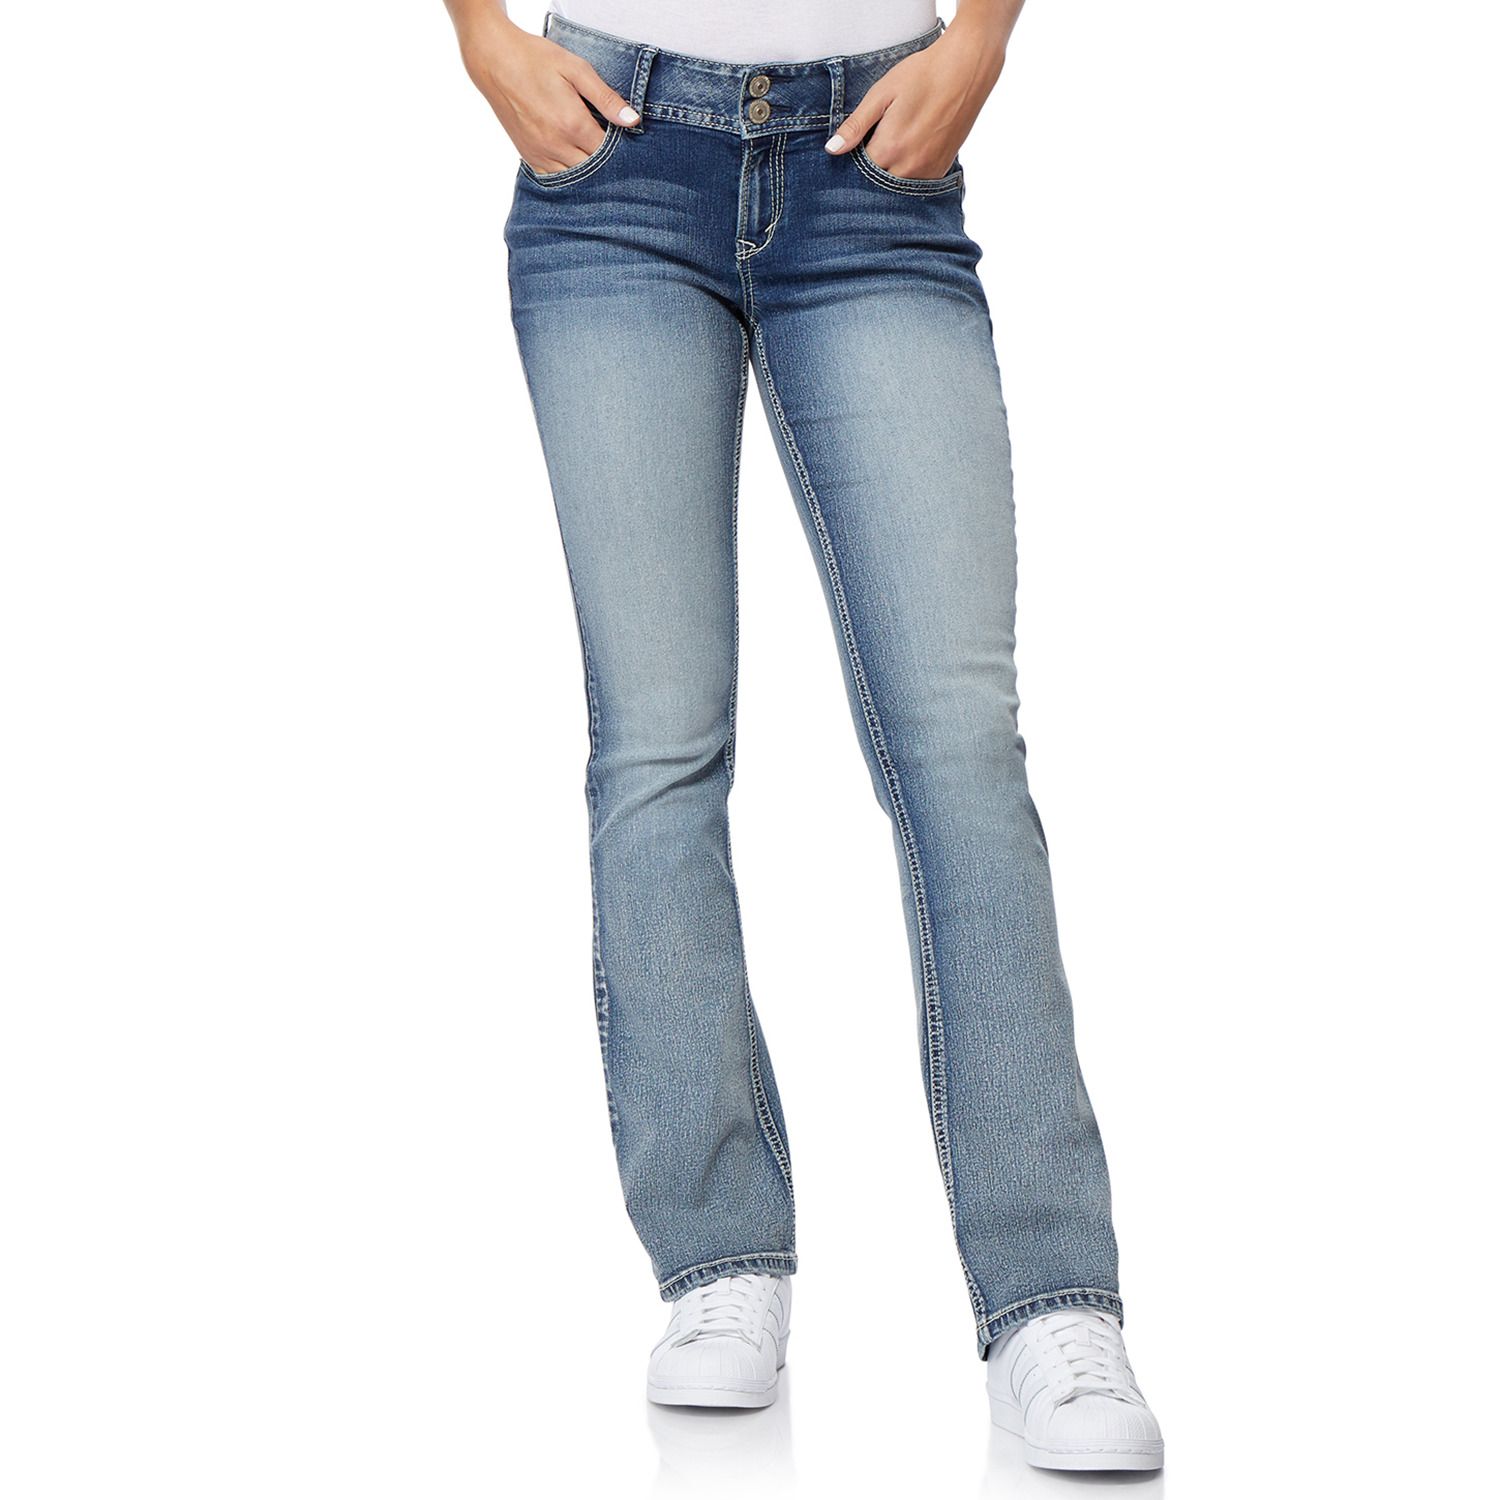 wallflower jeans size chart